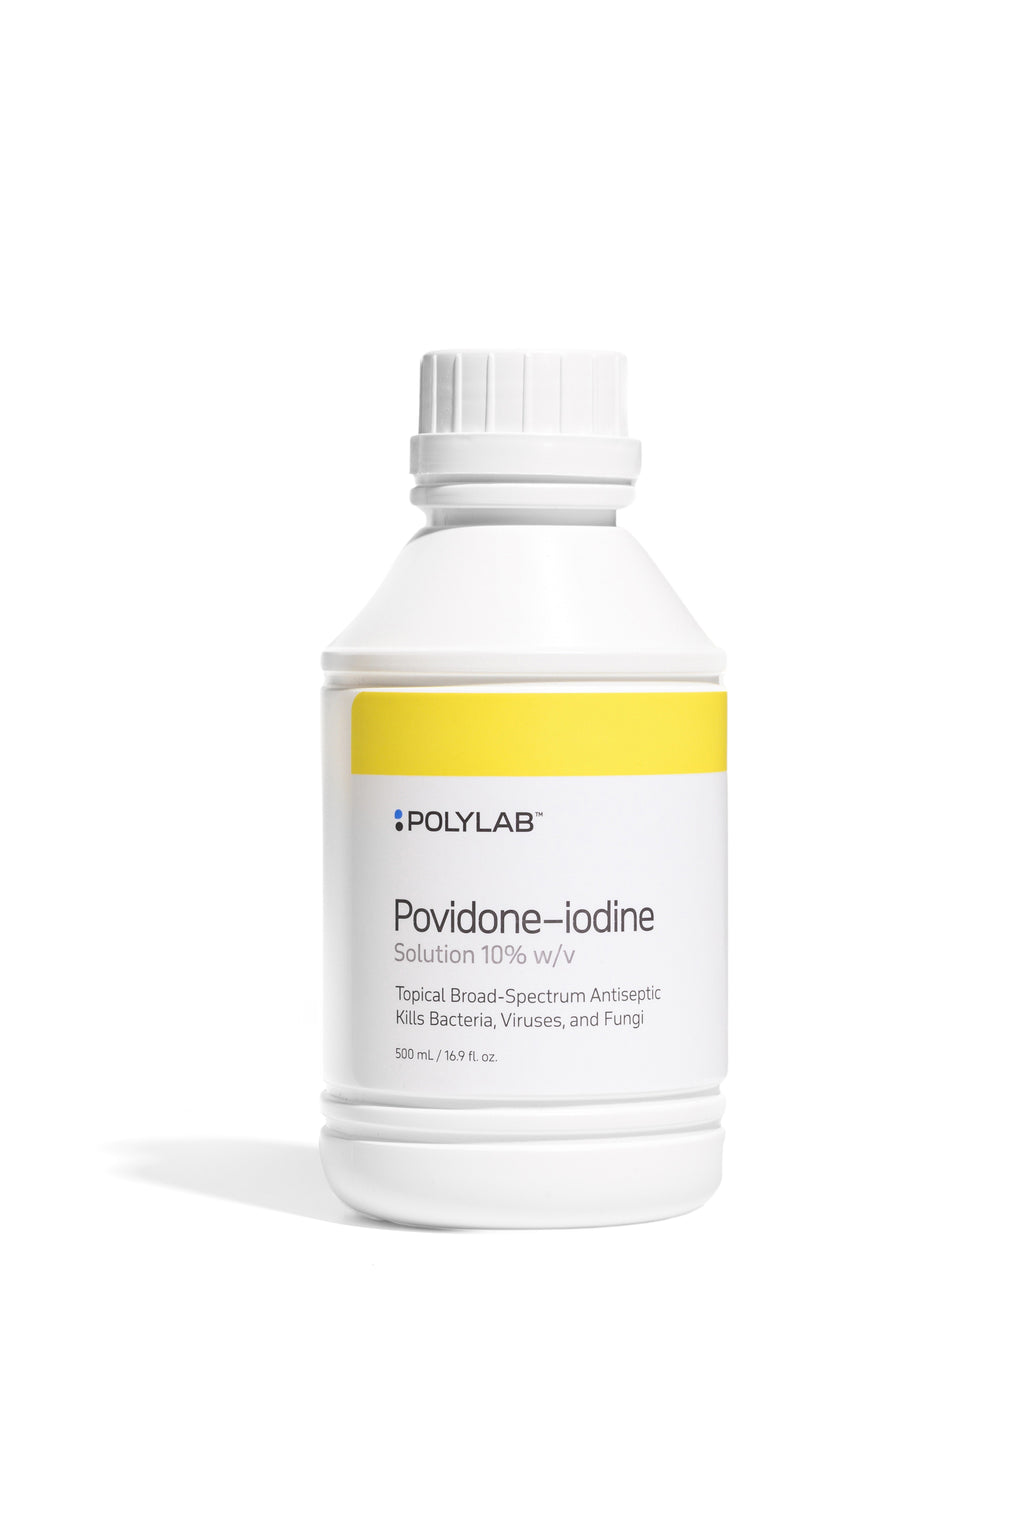 Povidone-iodine Solution 10% w/v